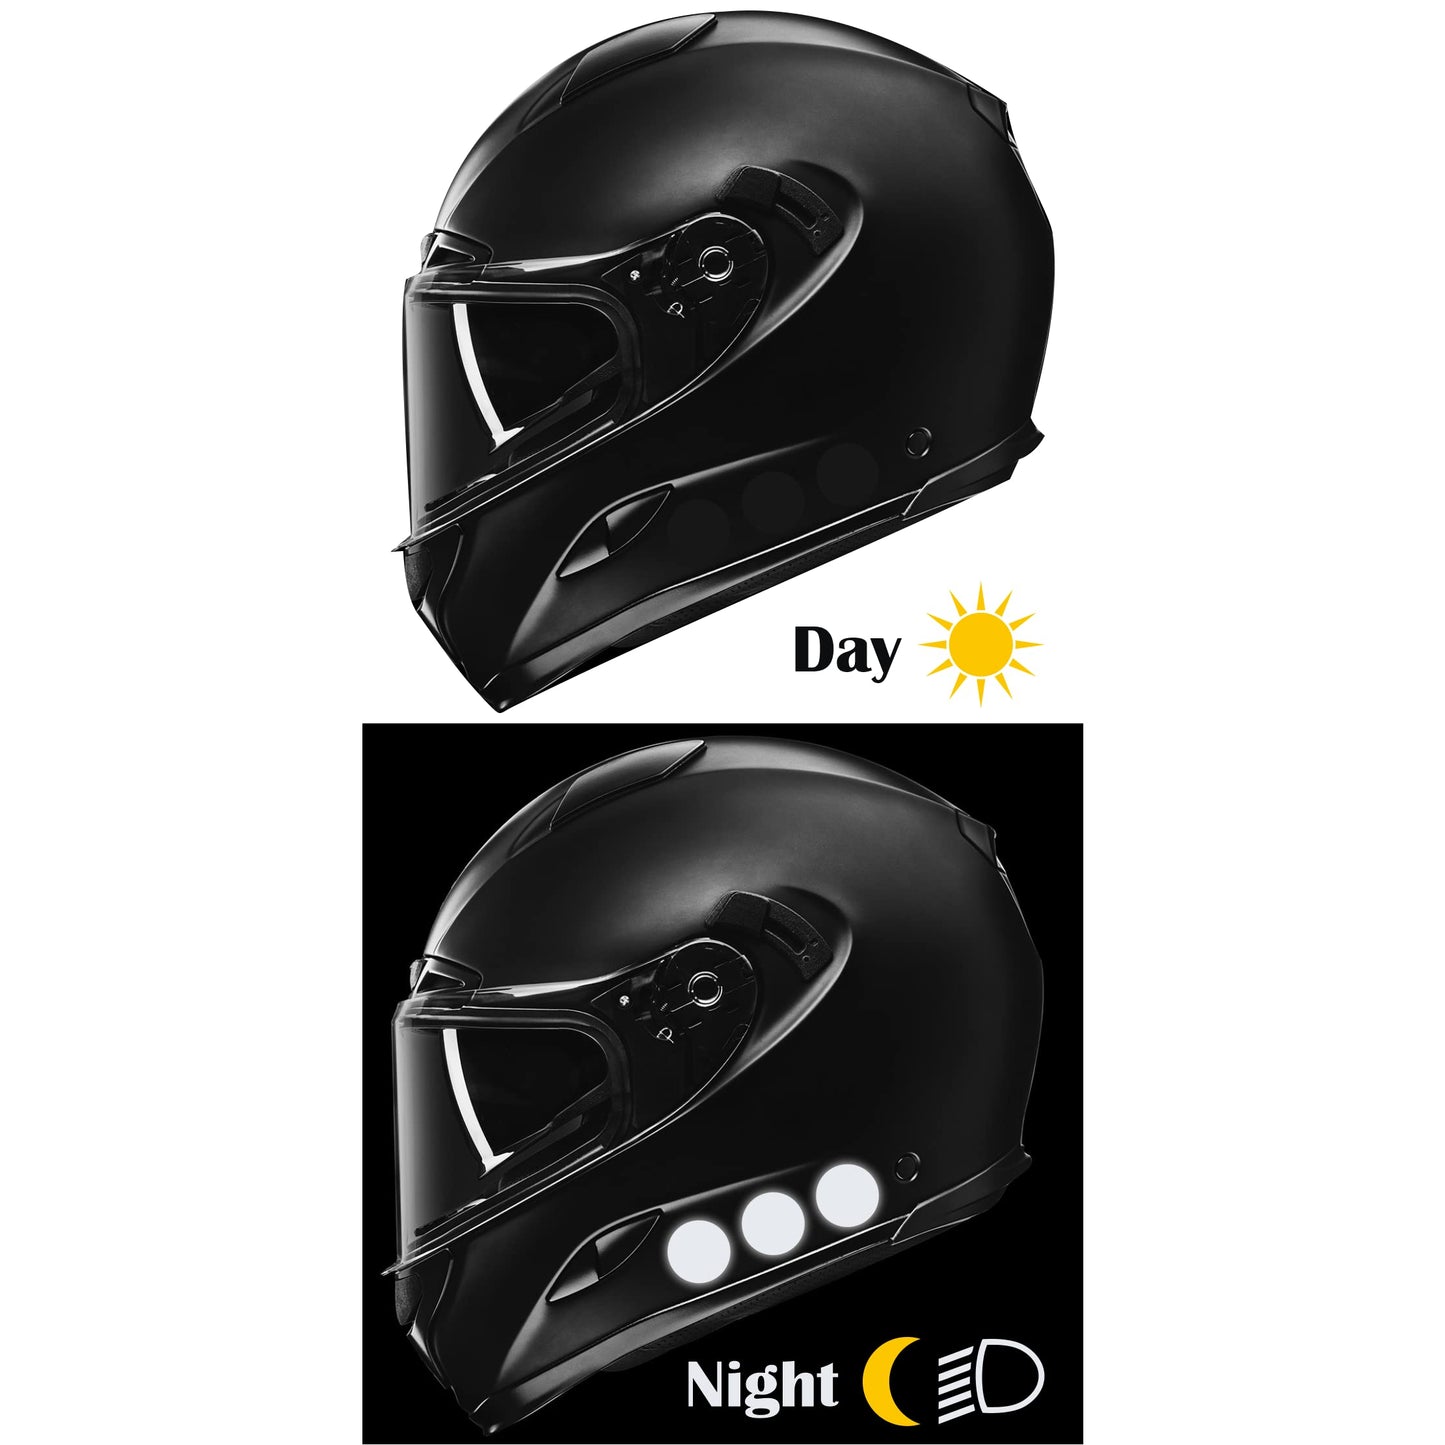 DualColorStampe Adesivi 12 PZ Sicurezza e visibilità di Notte per Bicicletta Passeggino Casco Moto Motorino Nero rifrangenti riflettenti catarifrangenti stickers COD.0273 a €8.99 solo da DualColorStampe